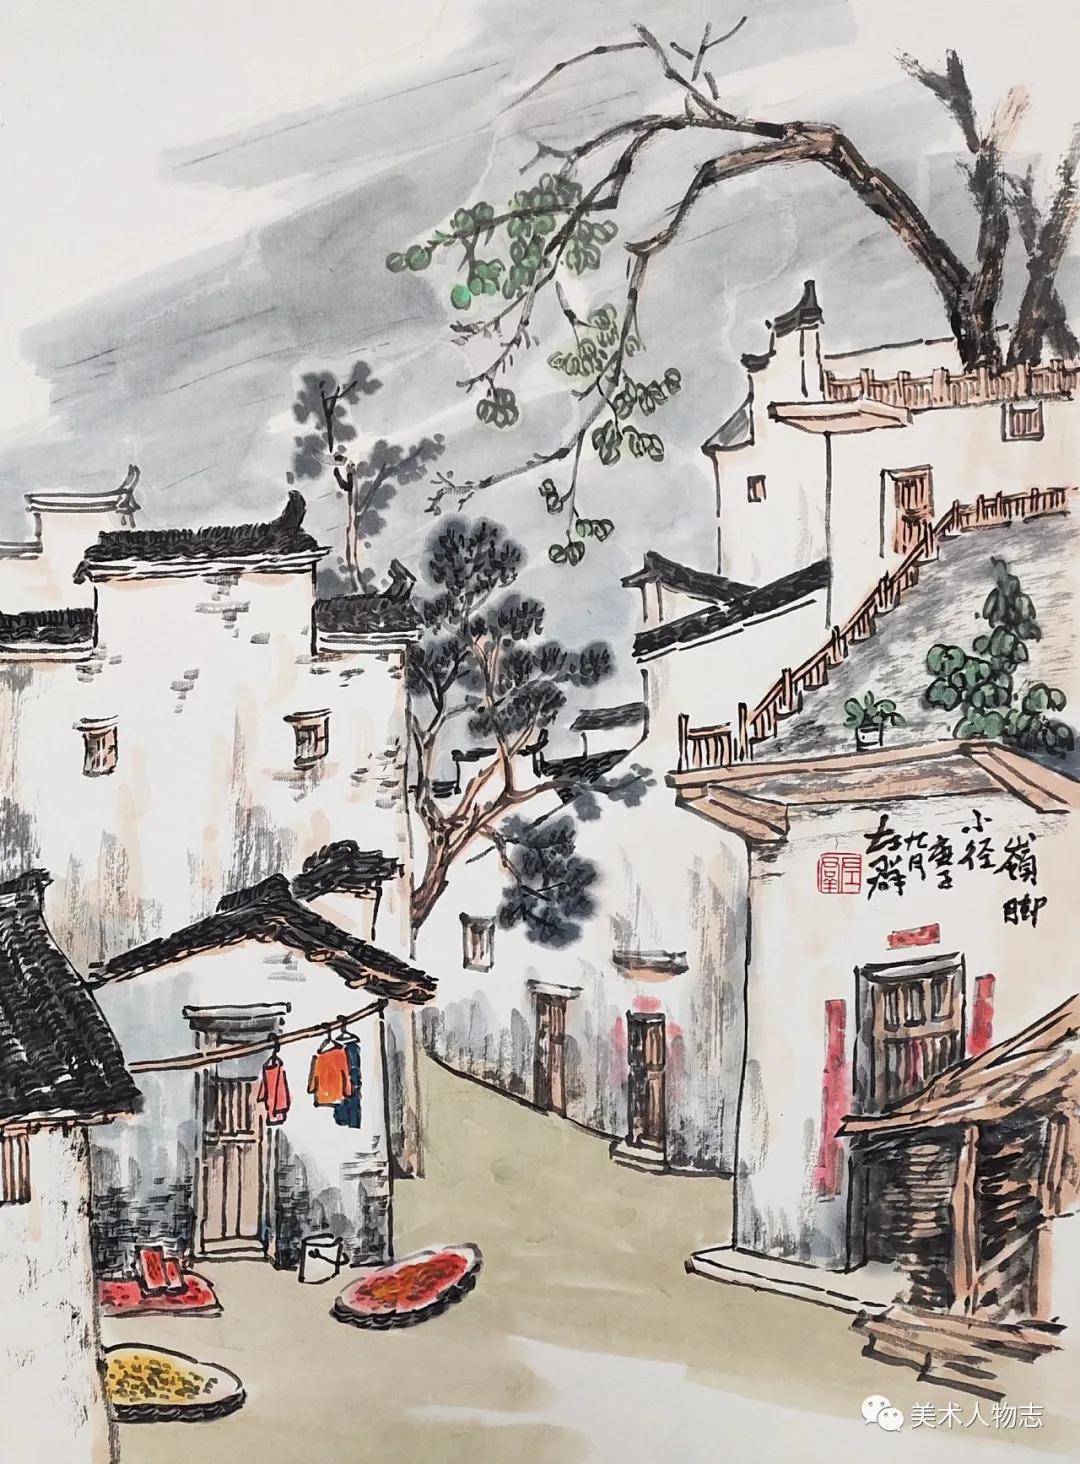 中国美术人物志左群婺源写生作品